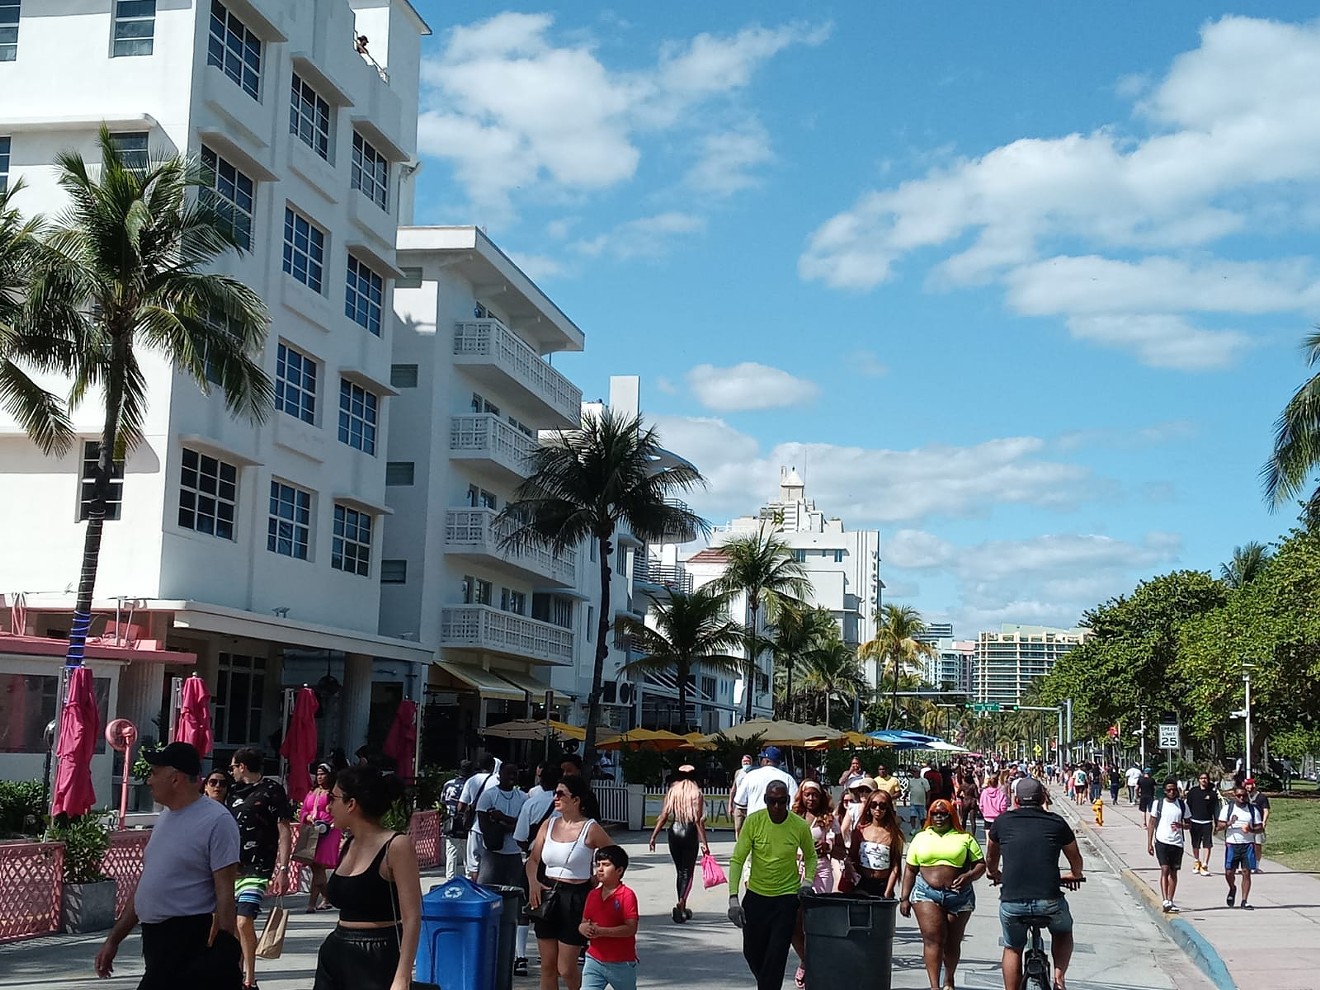 Shopping in South Beach - ENJOY MIAMI BEACH